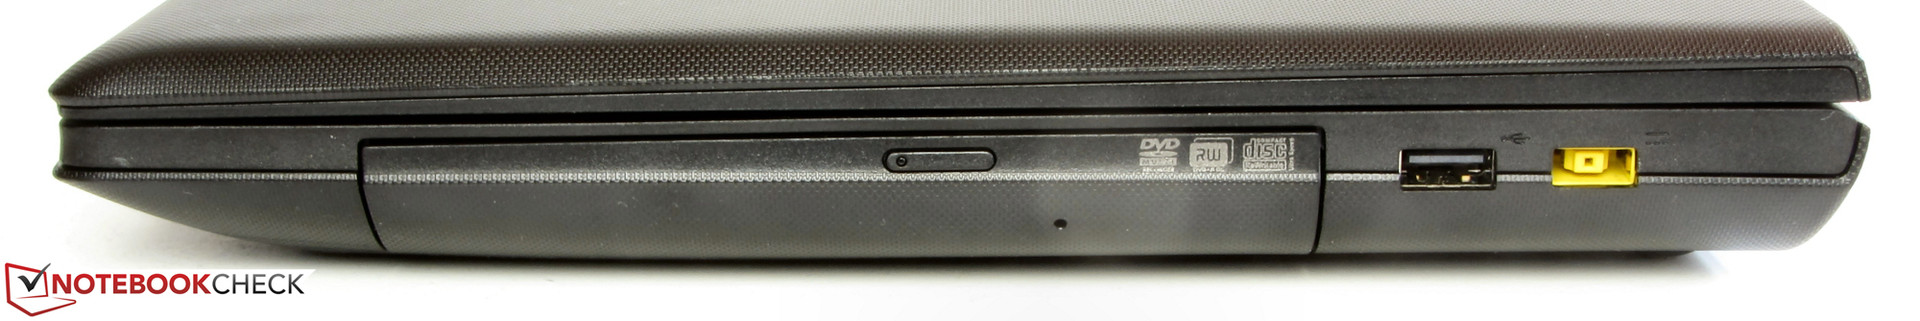 Ноутбуки без микрофона. Lenovo g510. Lenovo g590 дисковод. Lenovo g500 гнездо для карты памяти справа. Переключатели леново g570.